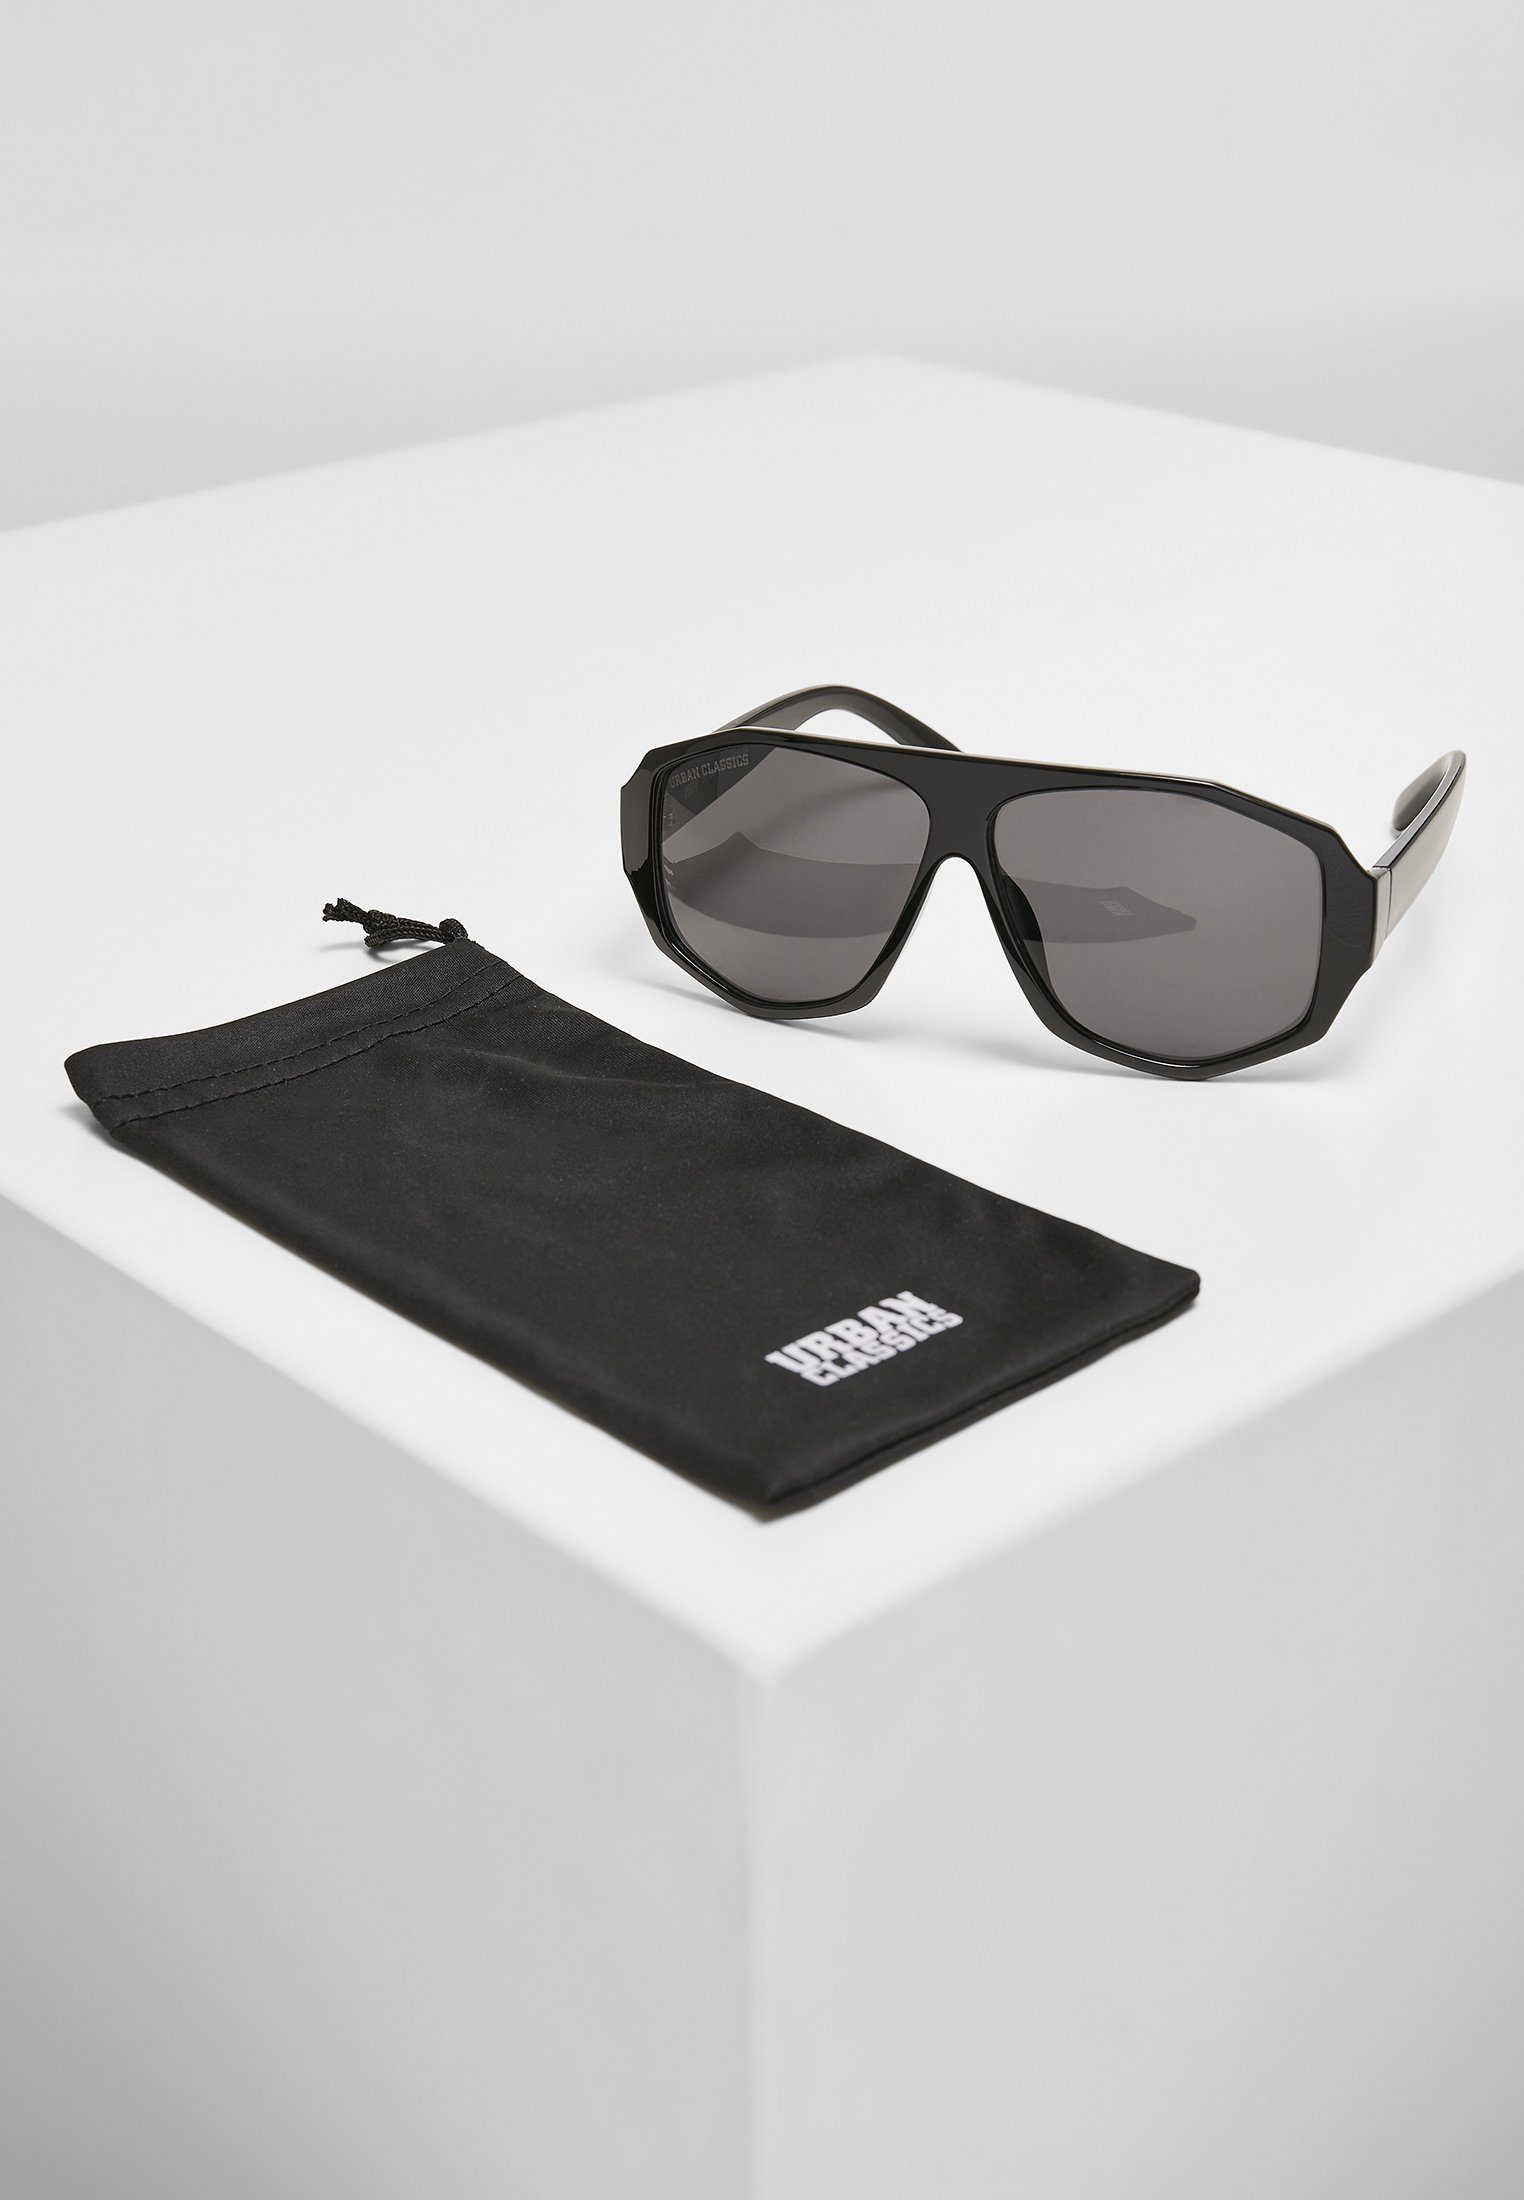 URBAN CLASSICS Sunglasses UC Sonnenbrille black/black Accessoires 101